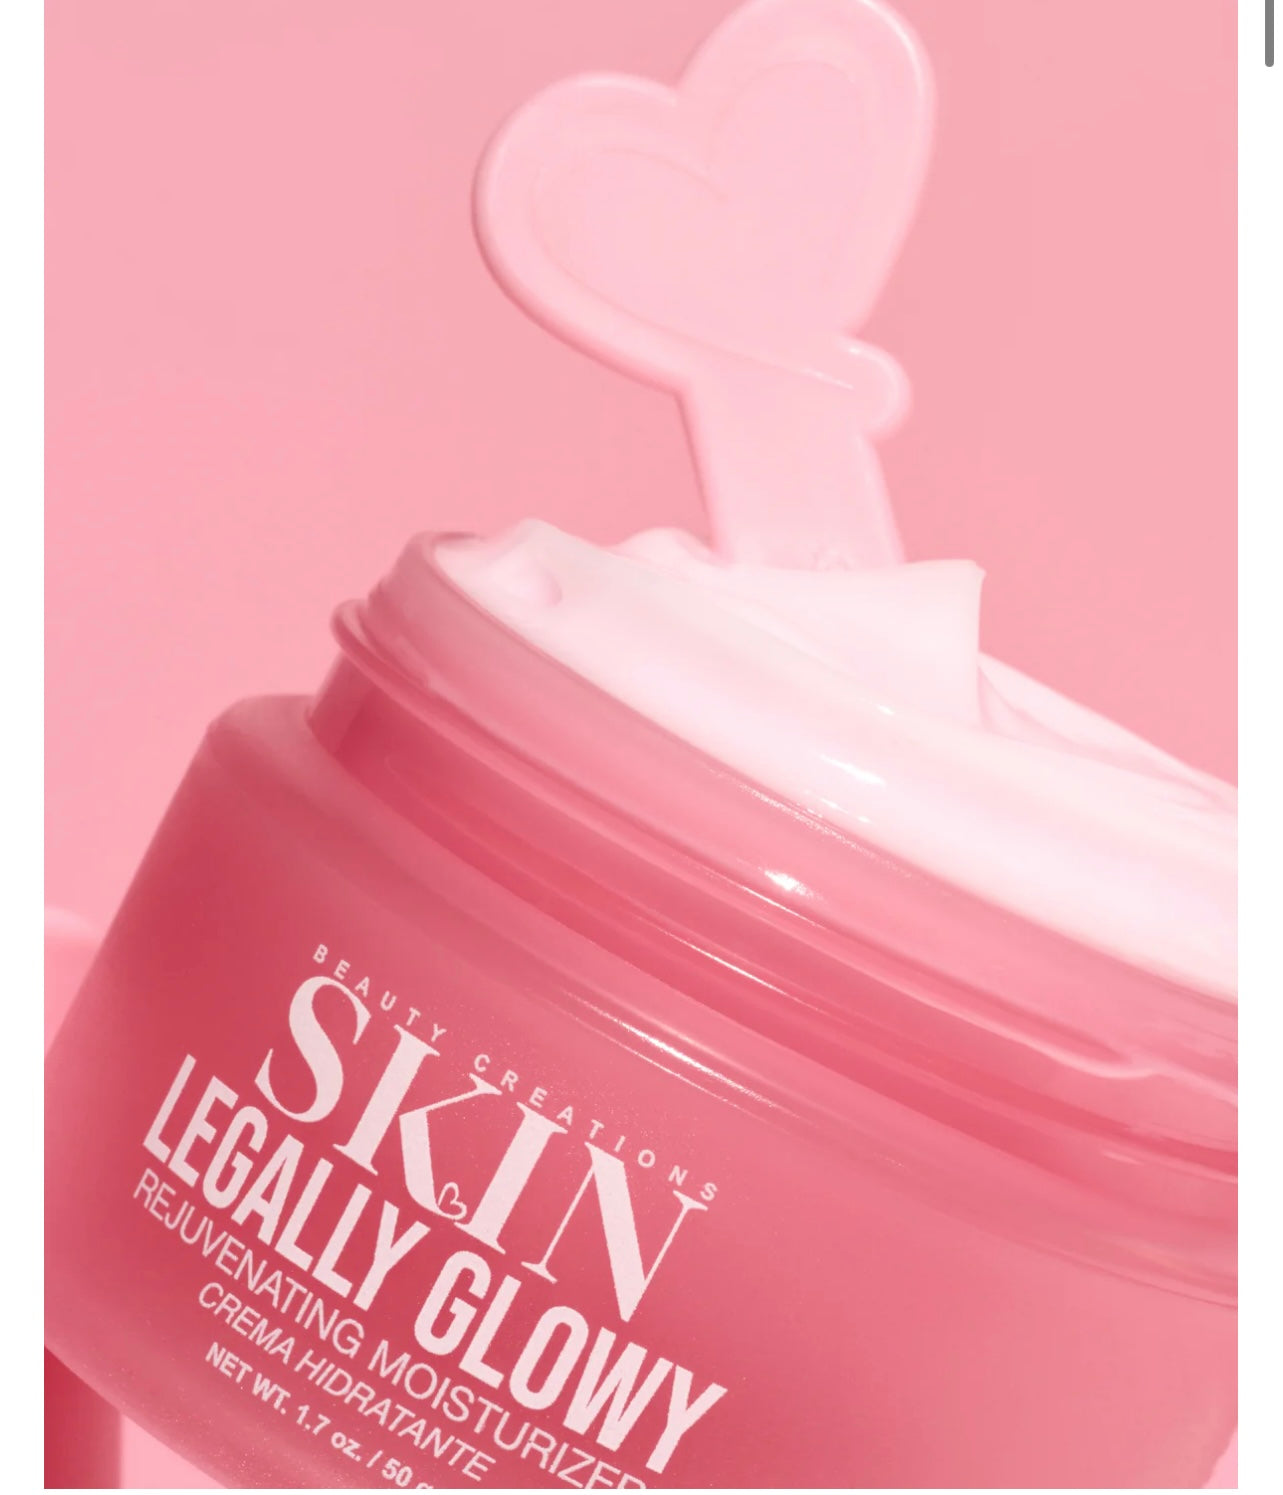 Legally glow moisturizer